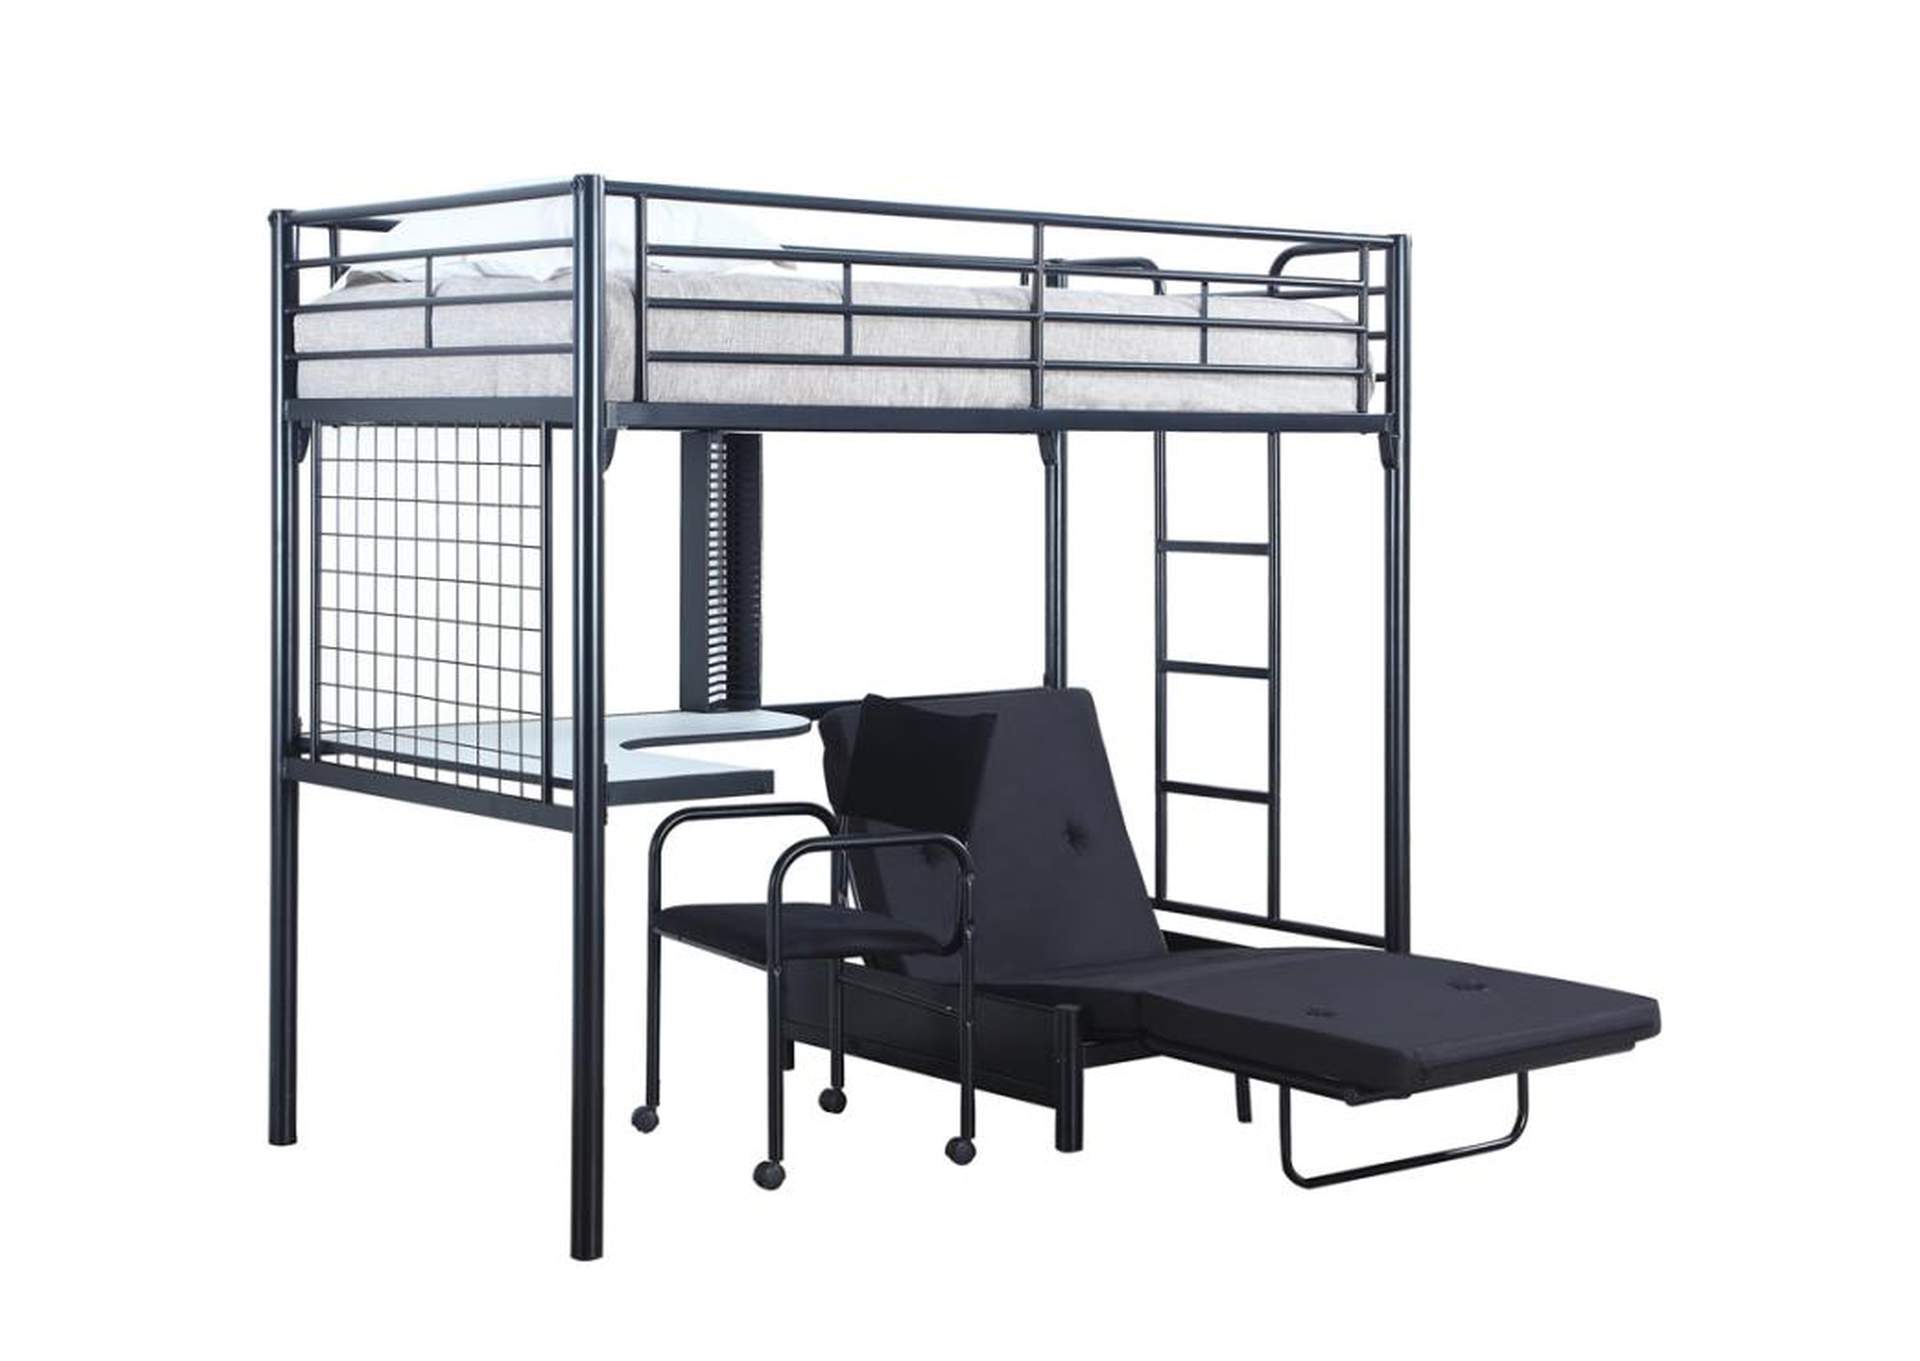 Jenner Twin Futon Workstation Loft Bed Black,Coaster Furniture